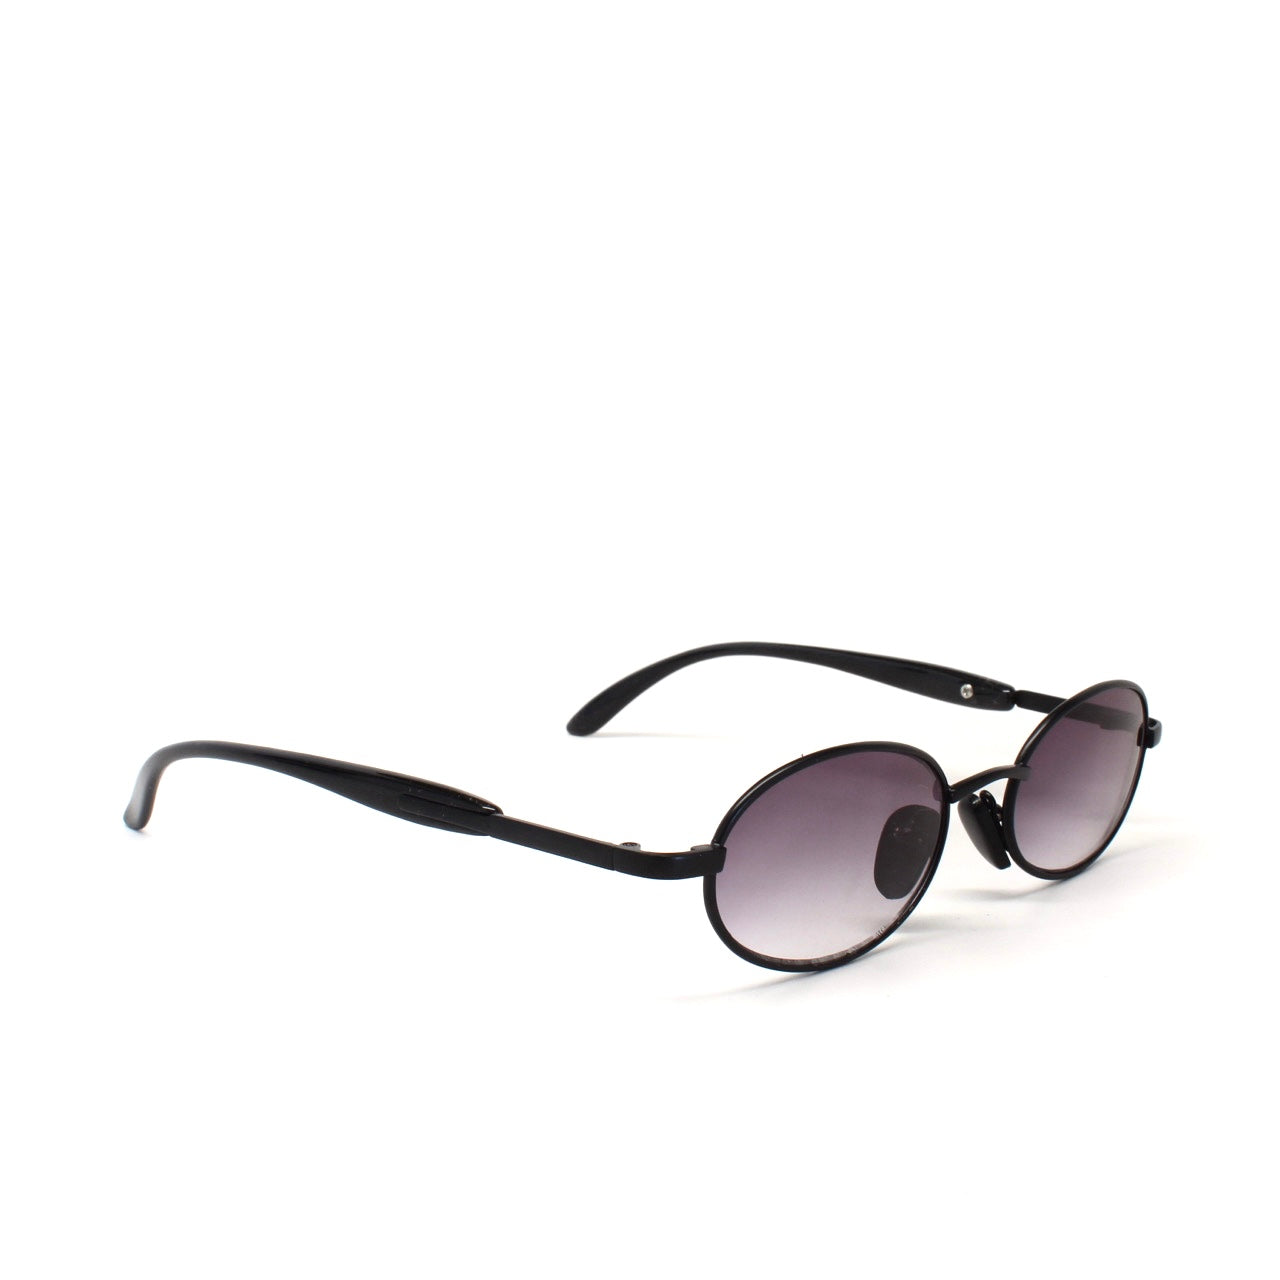 Small Size Mini 90s Deadstock Santa Fe Oval Sunglasses - Black